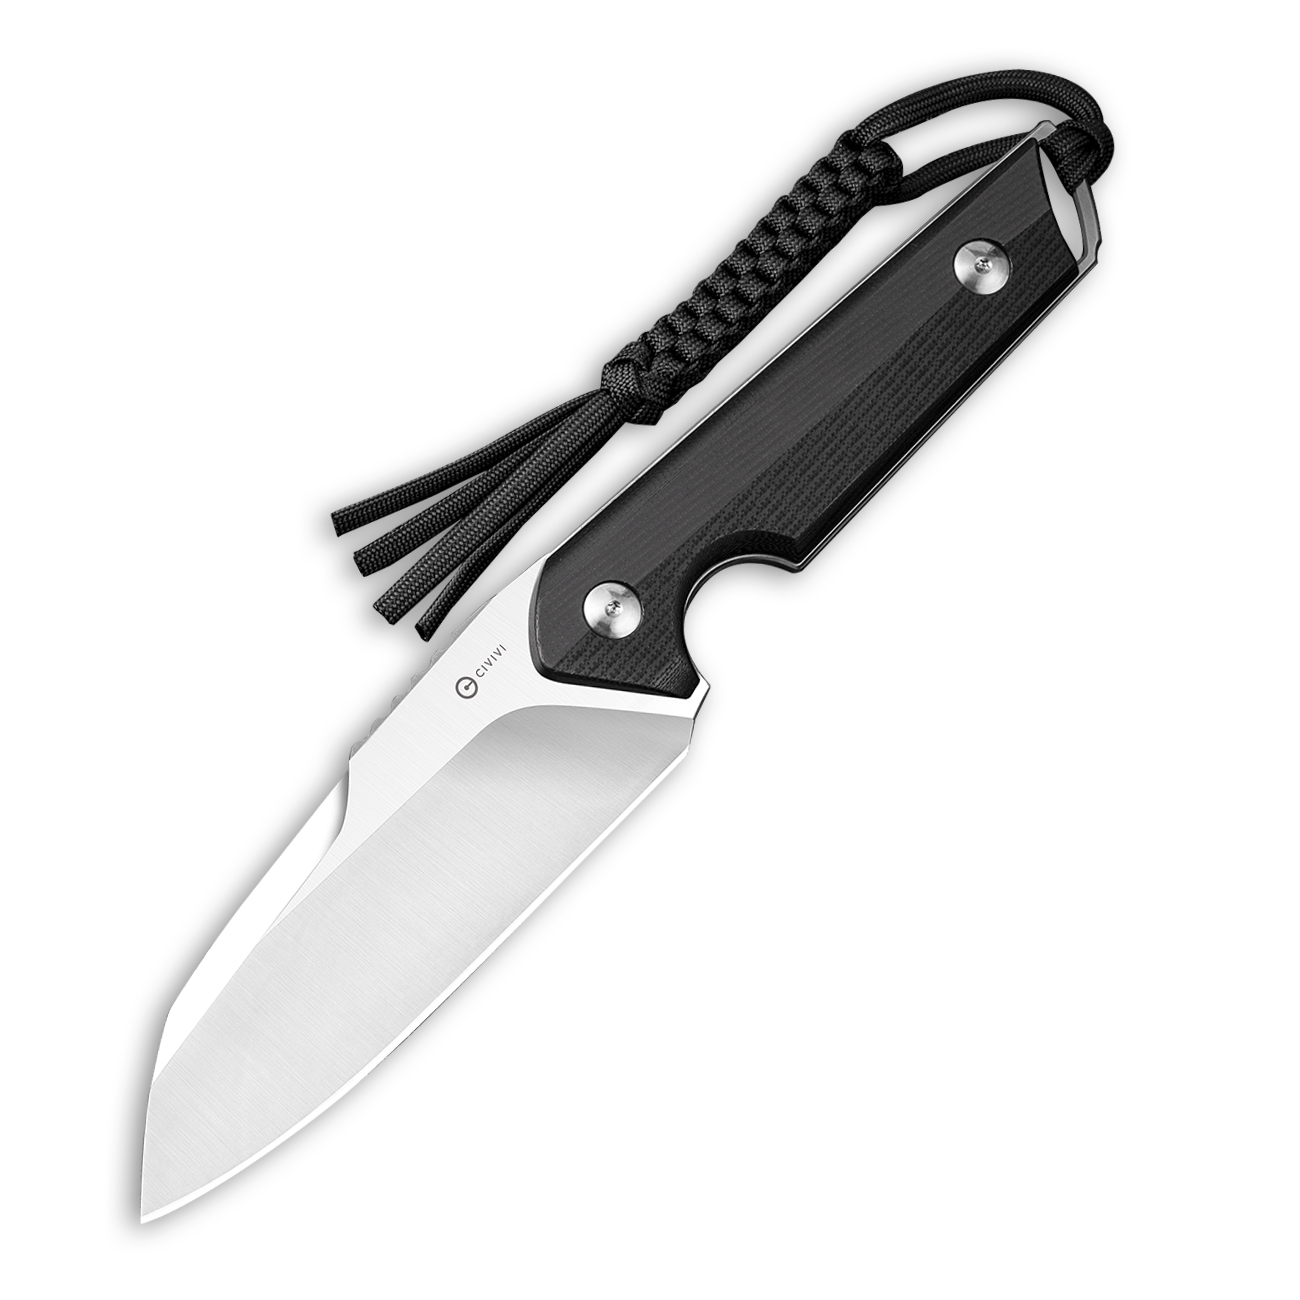 CIVIVI Kepler Fixed Blade C2109C Knife 9Cr18MoV Stainless Steel & Black G10 Hunting Knives